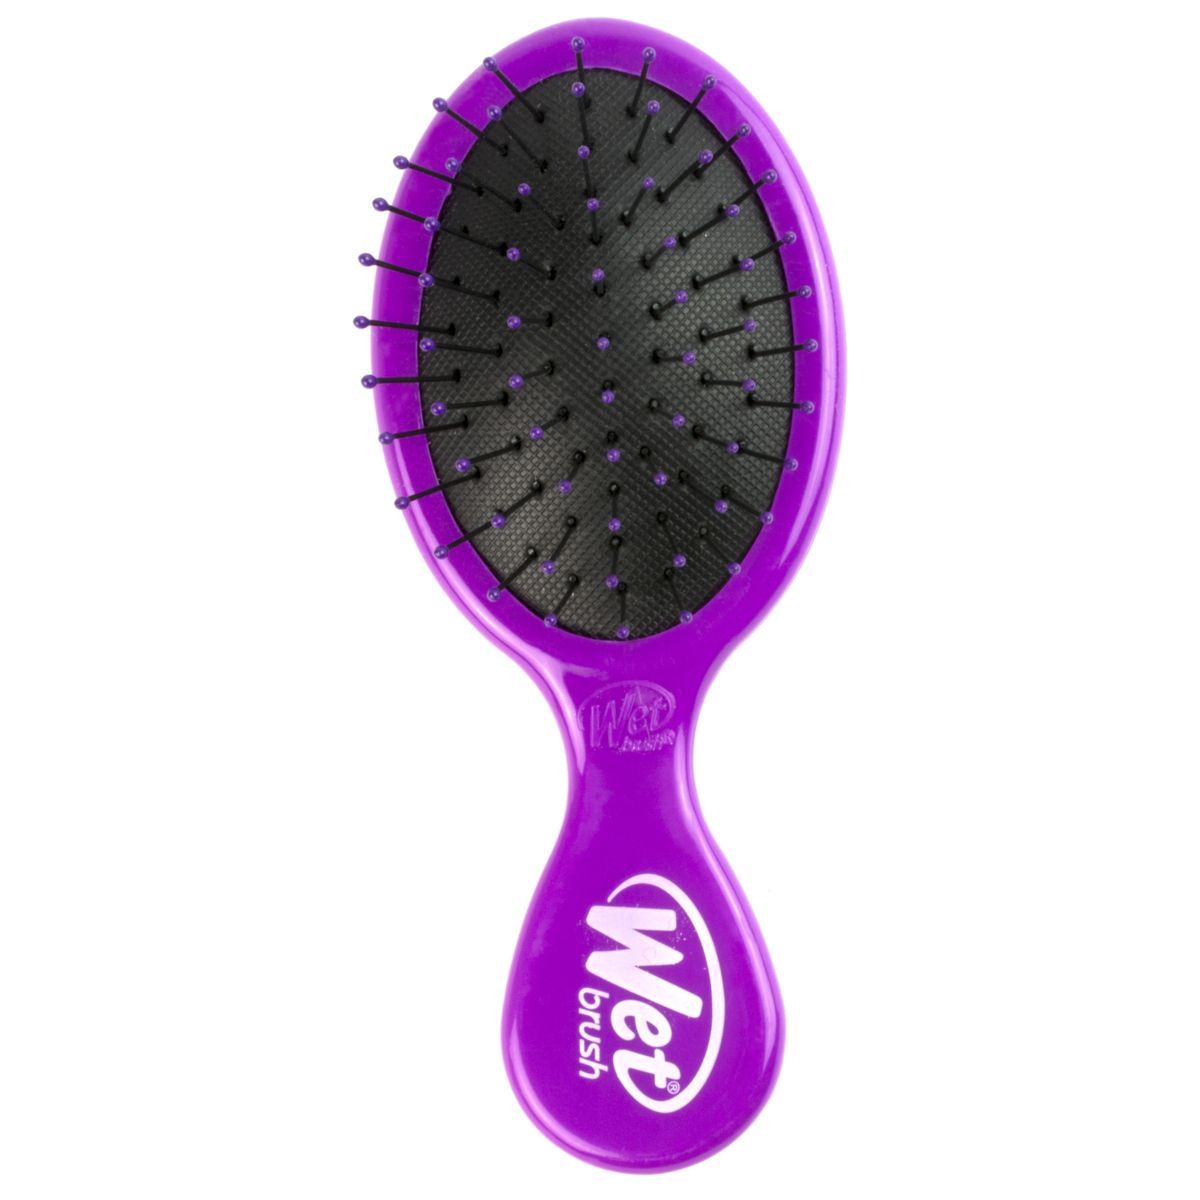 Wet Brush Mini Detangler Hair Brush - Purple | Target